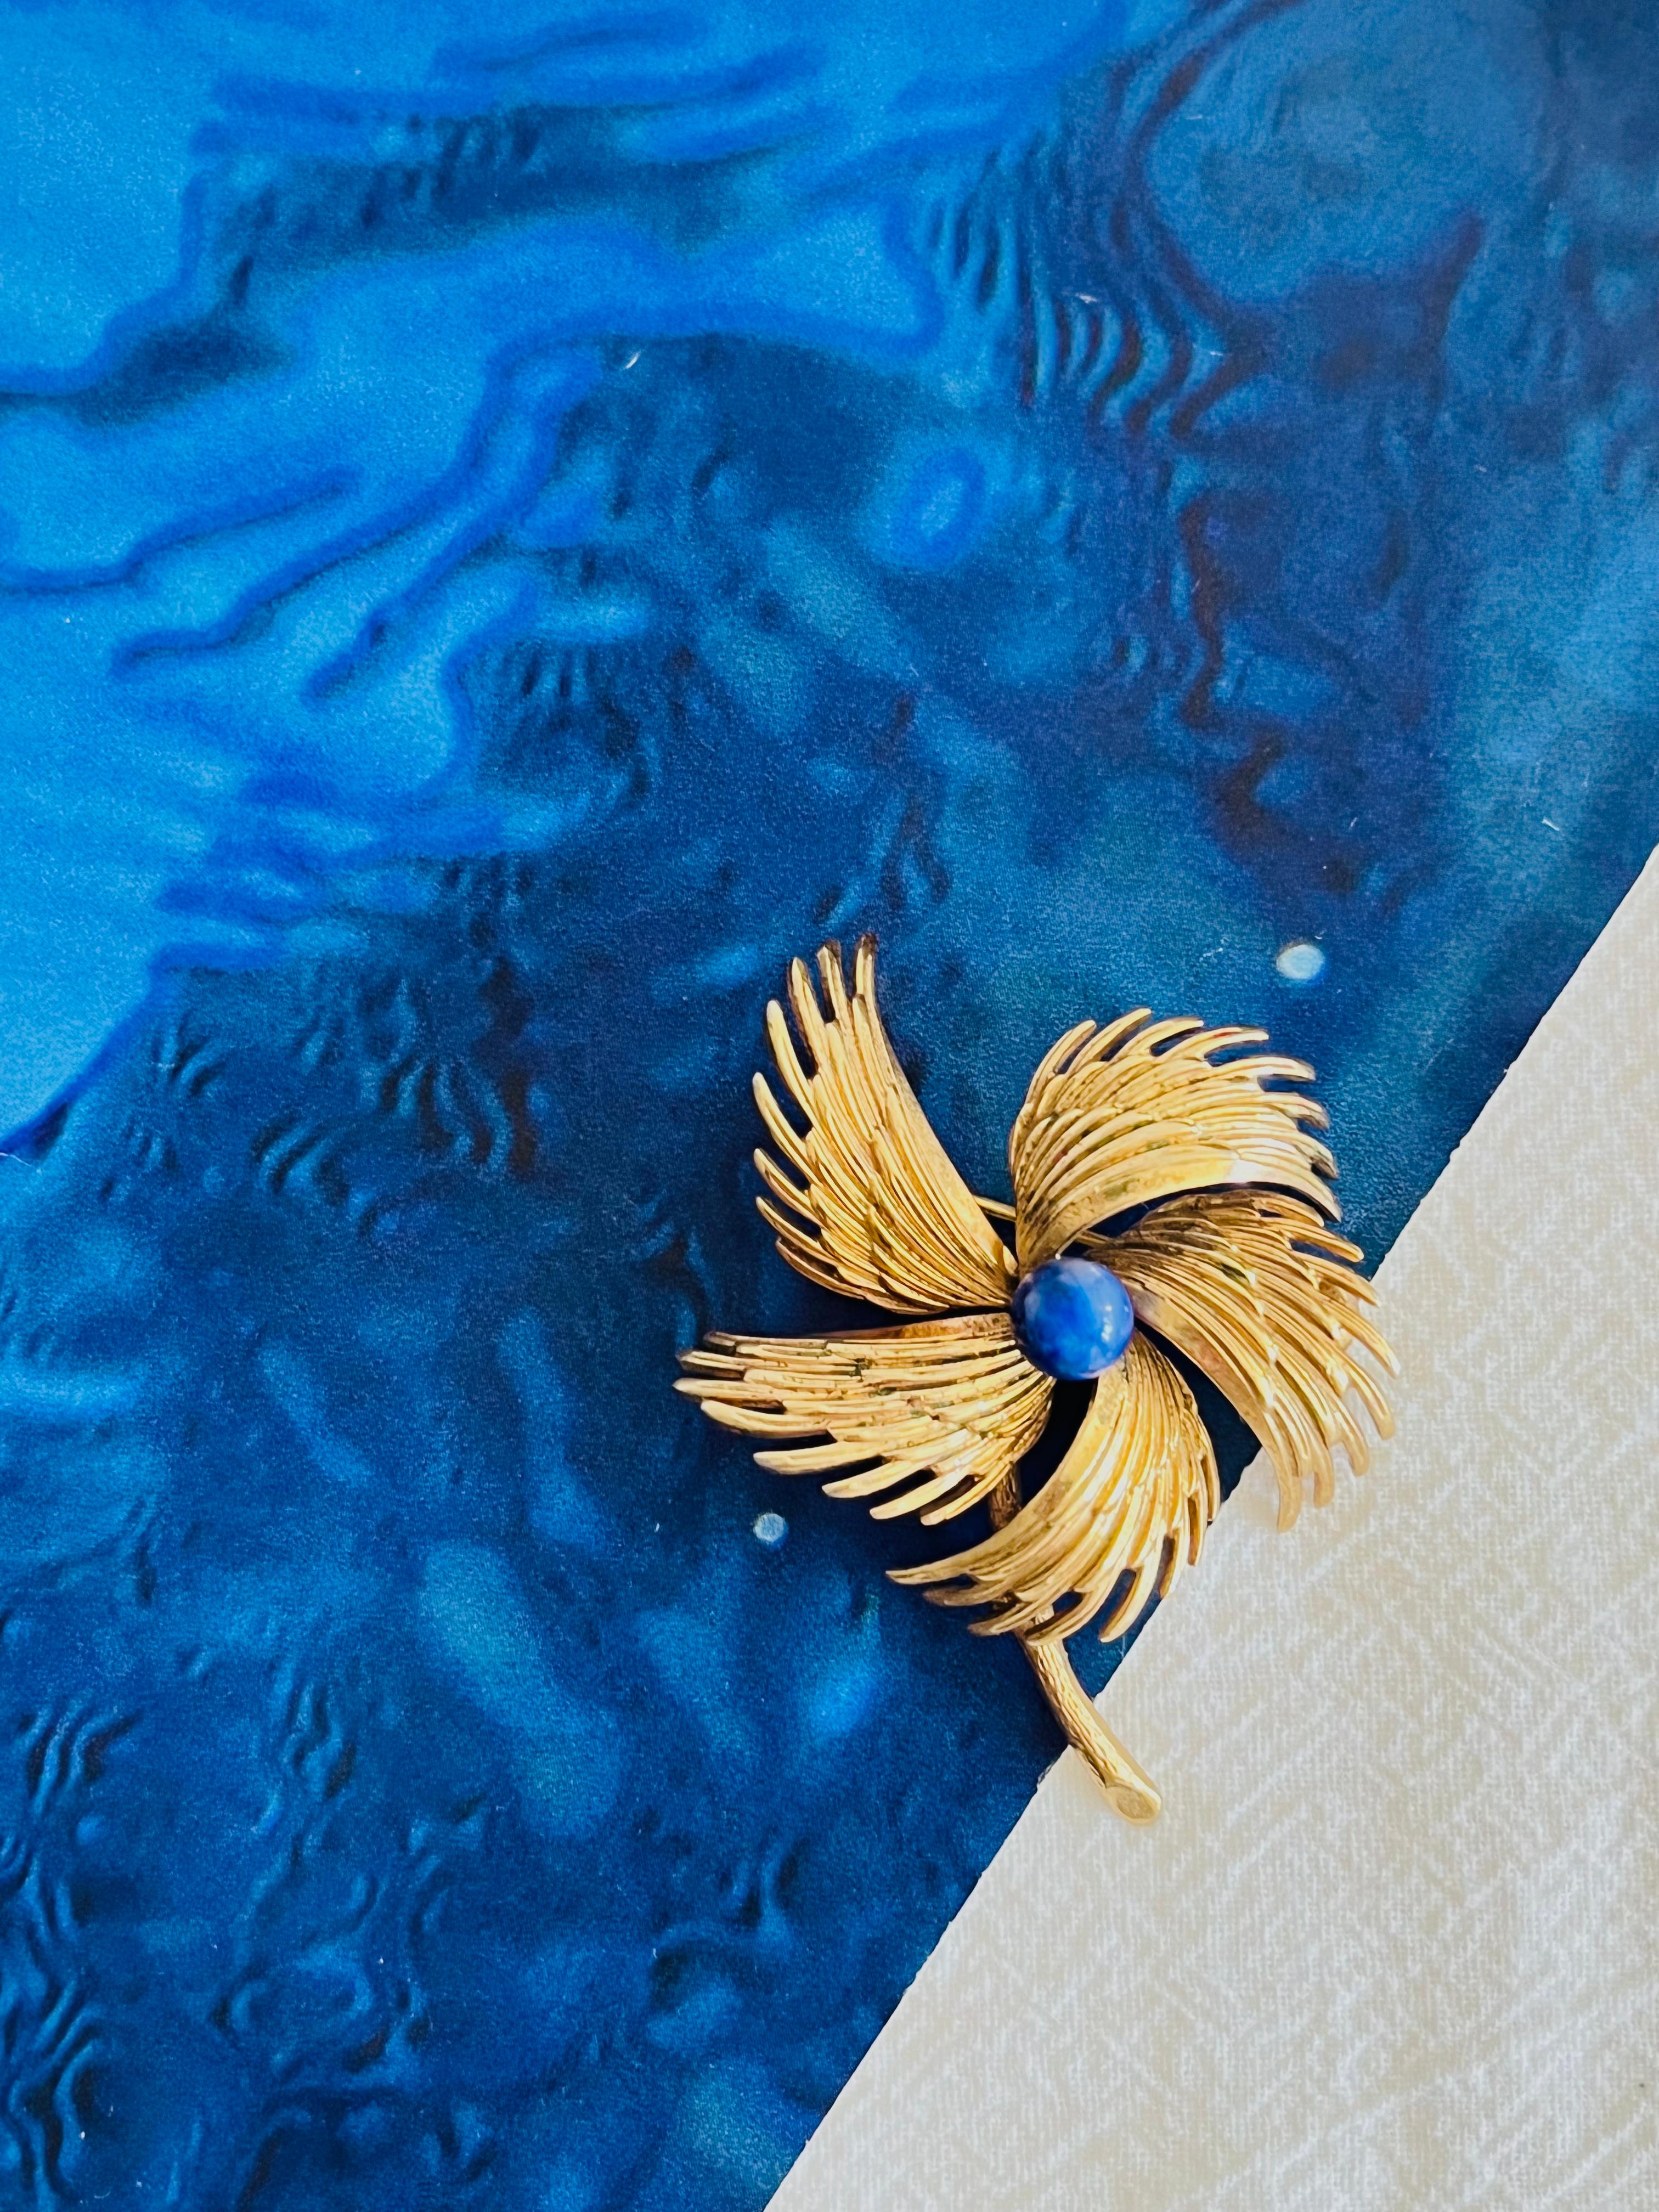 Christian Dior GROSSE 1967 Vintage Marine Flügel Feder Blume Windmühlen Brosche, Gold-Ton

Sehr guter Zustand. Leichte Kratzer oder Farbverluste, kaum wahrnehmbar. 100% echt.

Verschluss mit Sicherheitsnadel. Auf der Rückseite signiert Grosse